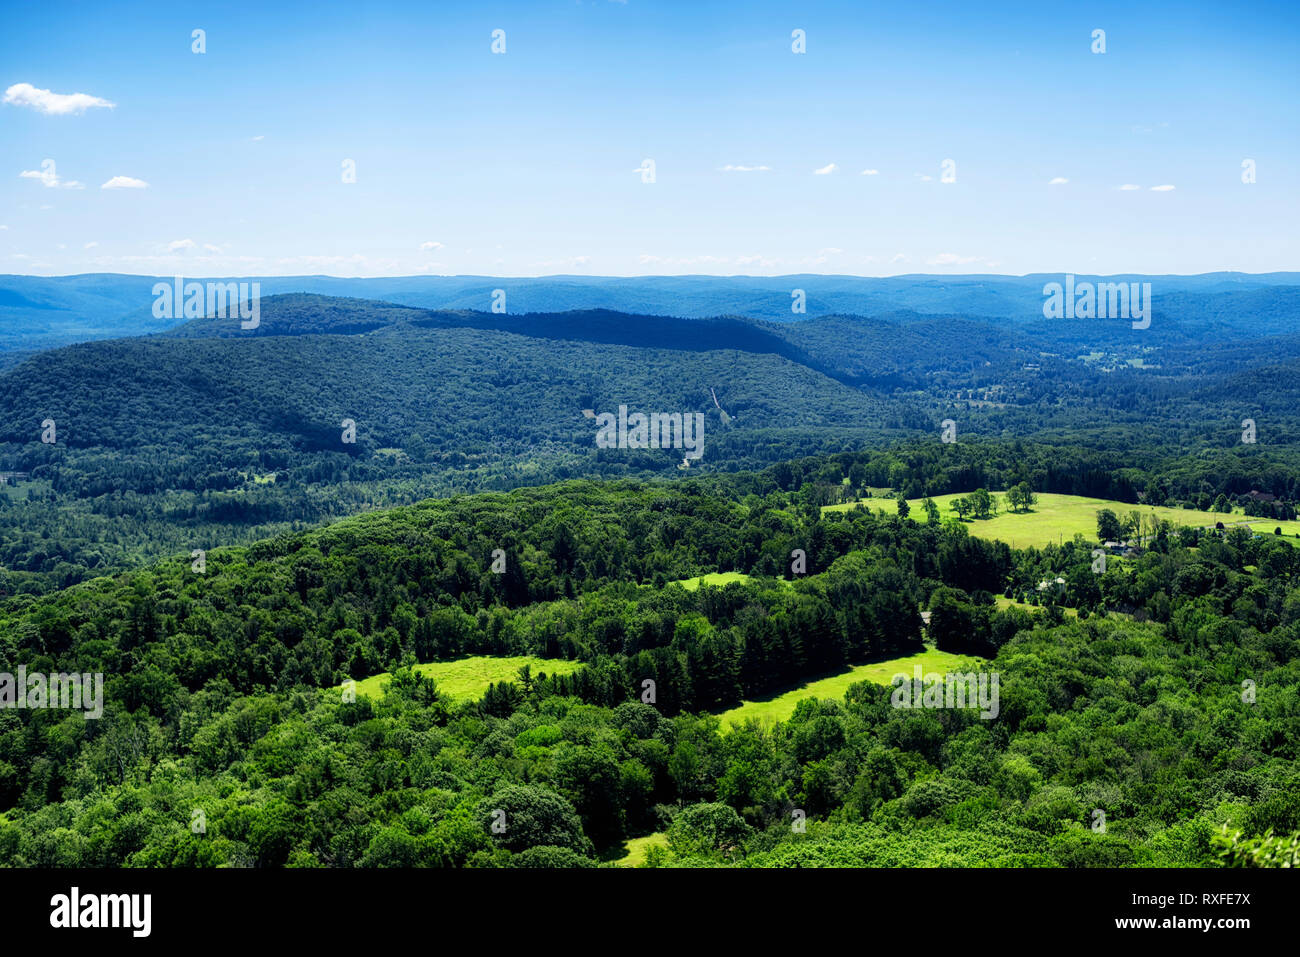 Las ondulantes colinas de la parte noroeste de Connecticut en Salisbury, visto desde la parte superior de Lions Head en el Sendero de los Apalaches en verano. Foto de stock